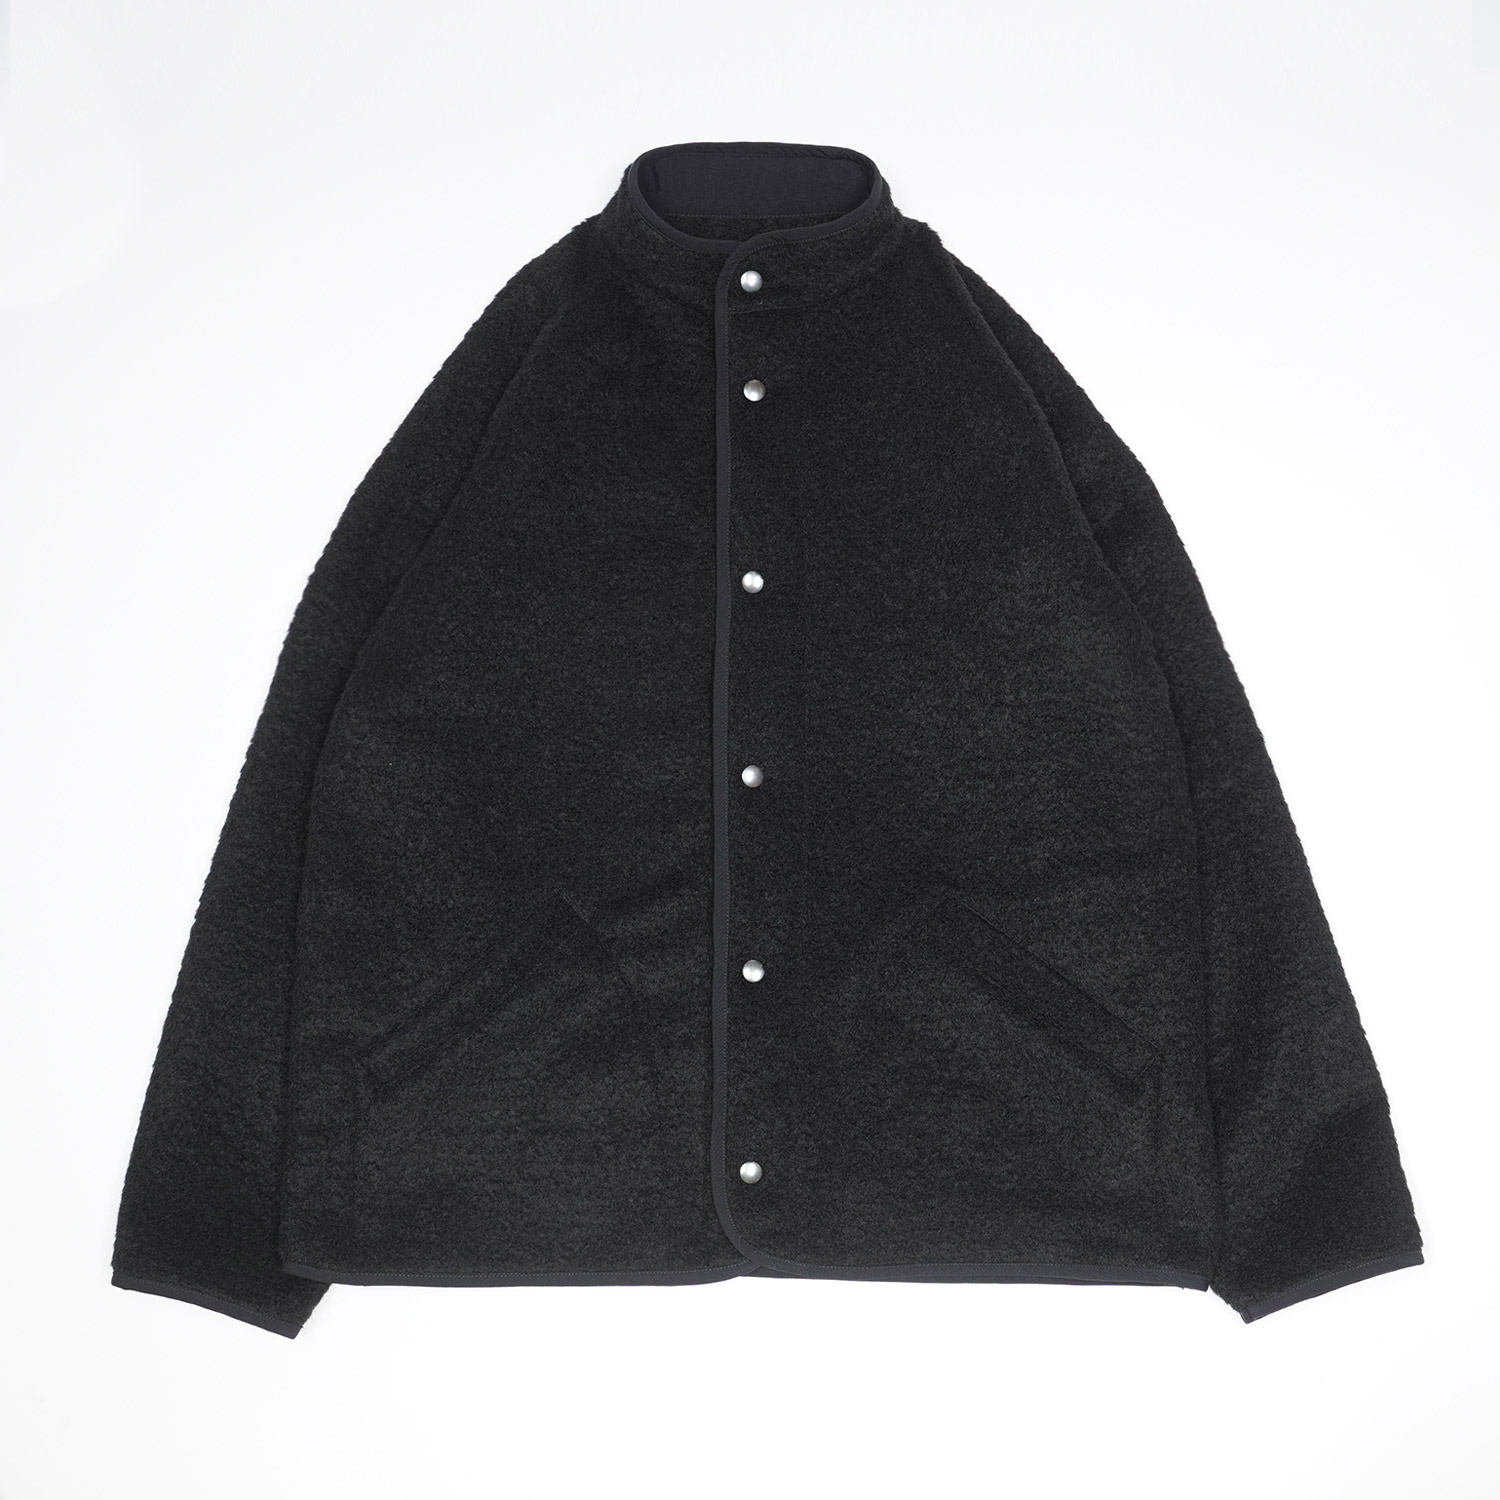 CONTOUR Jacket in Black color by Arpenteur